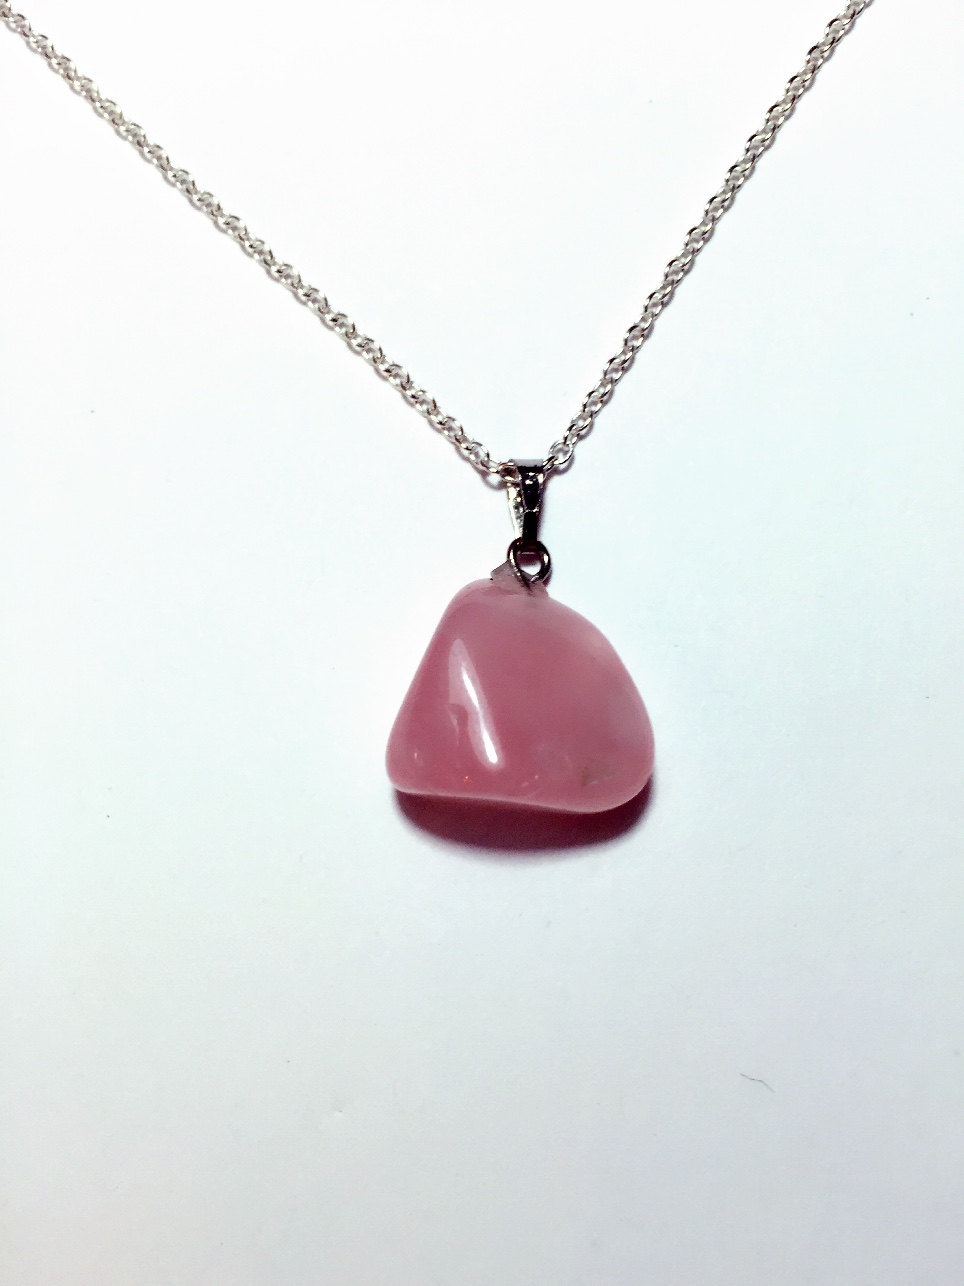 Natural Rose quartz necklace, pink crystal necklace, pink gemstone necklace - $20.00